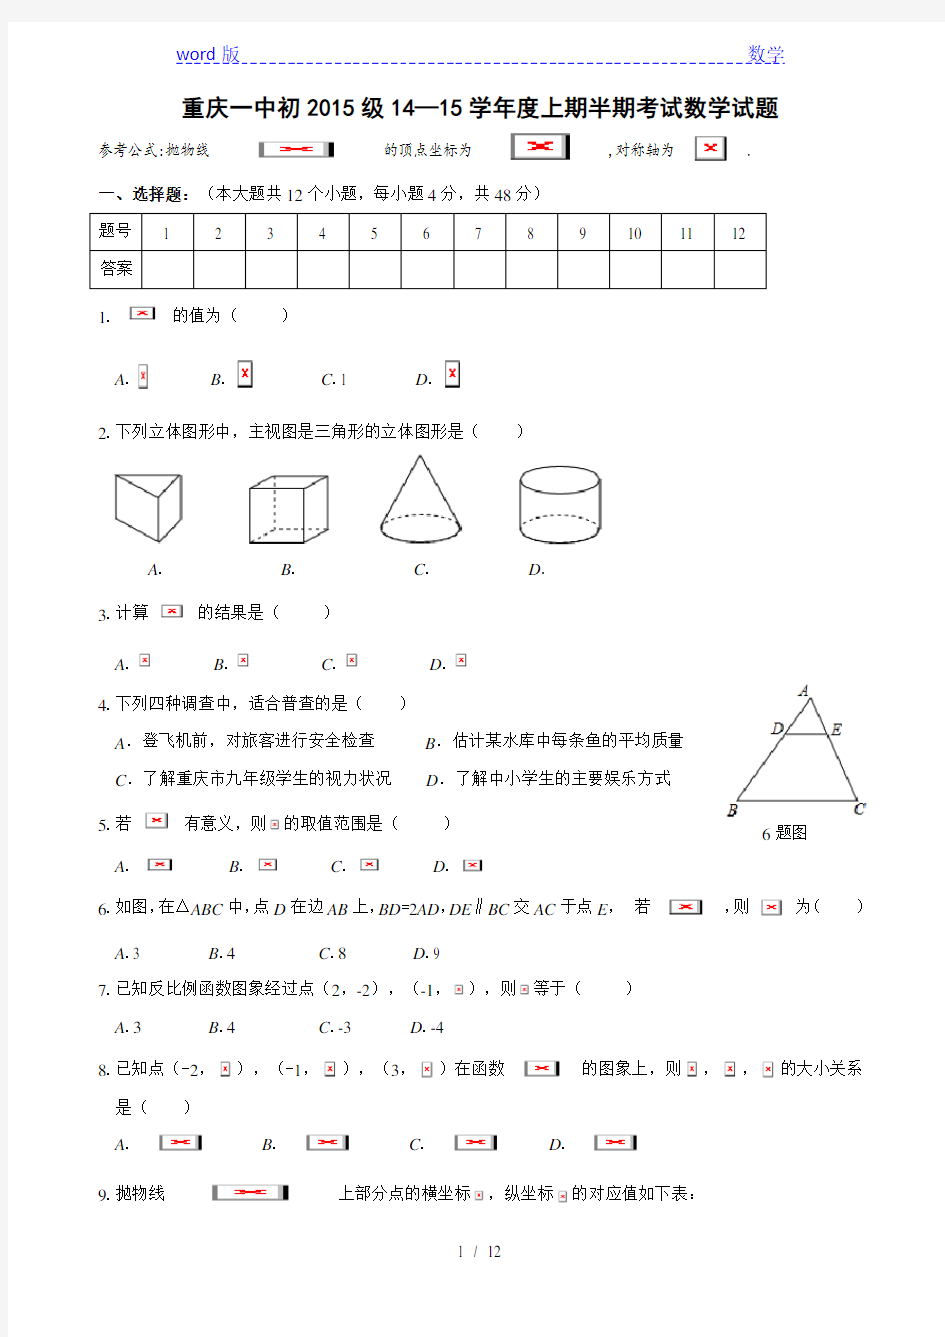 重庆一中初2015级2014-2015年九年级上半期数学试题及答案